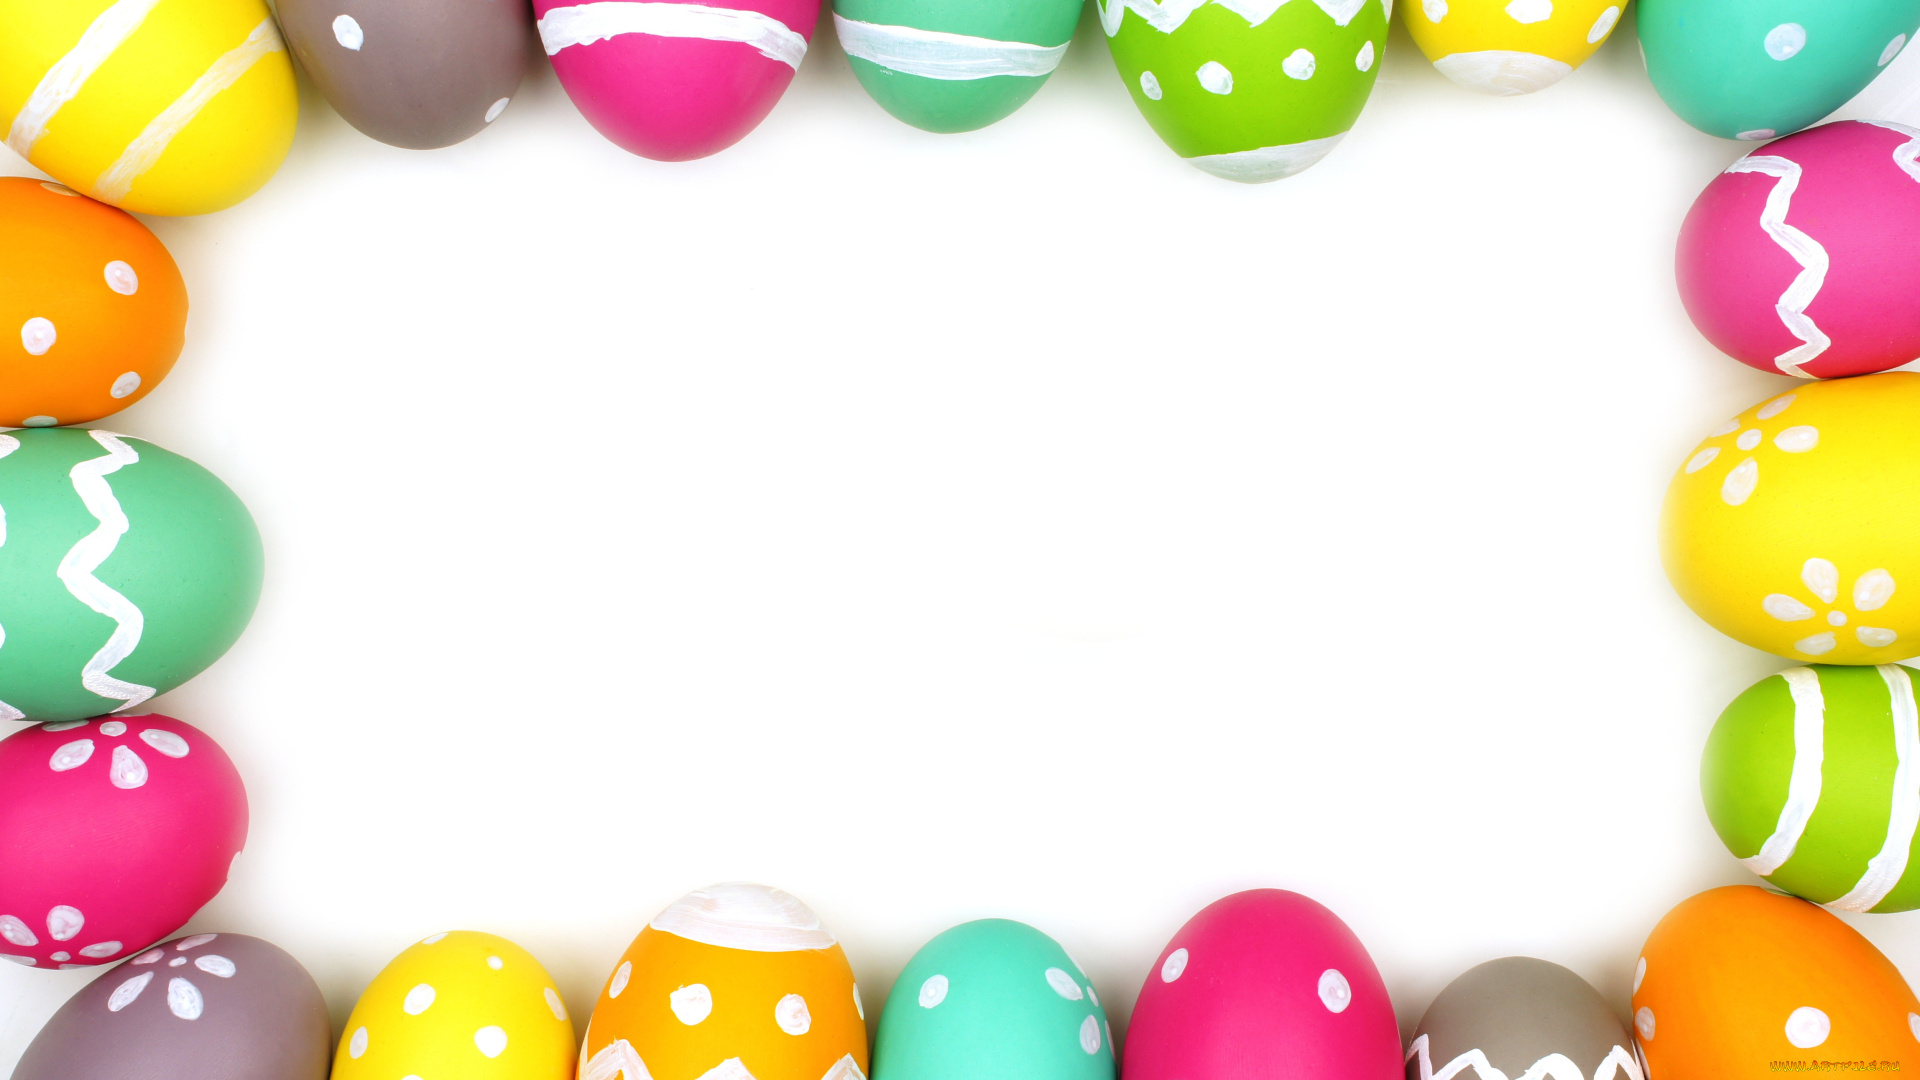 праздничные, пасха, eggs, easter, рамка, colorful, decoration, spring, happy, frame, яйца, крашеные